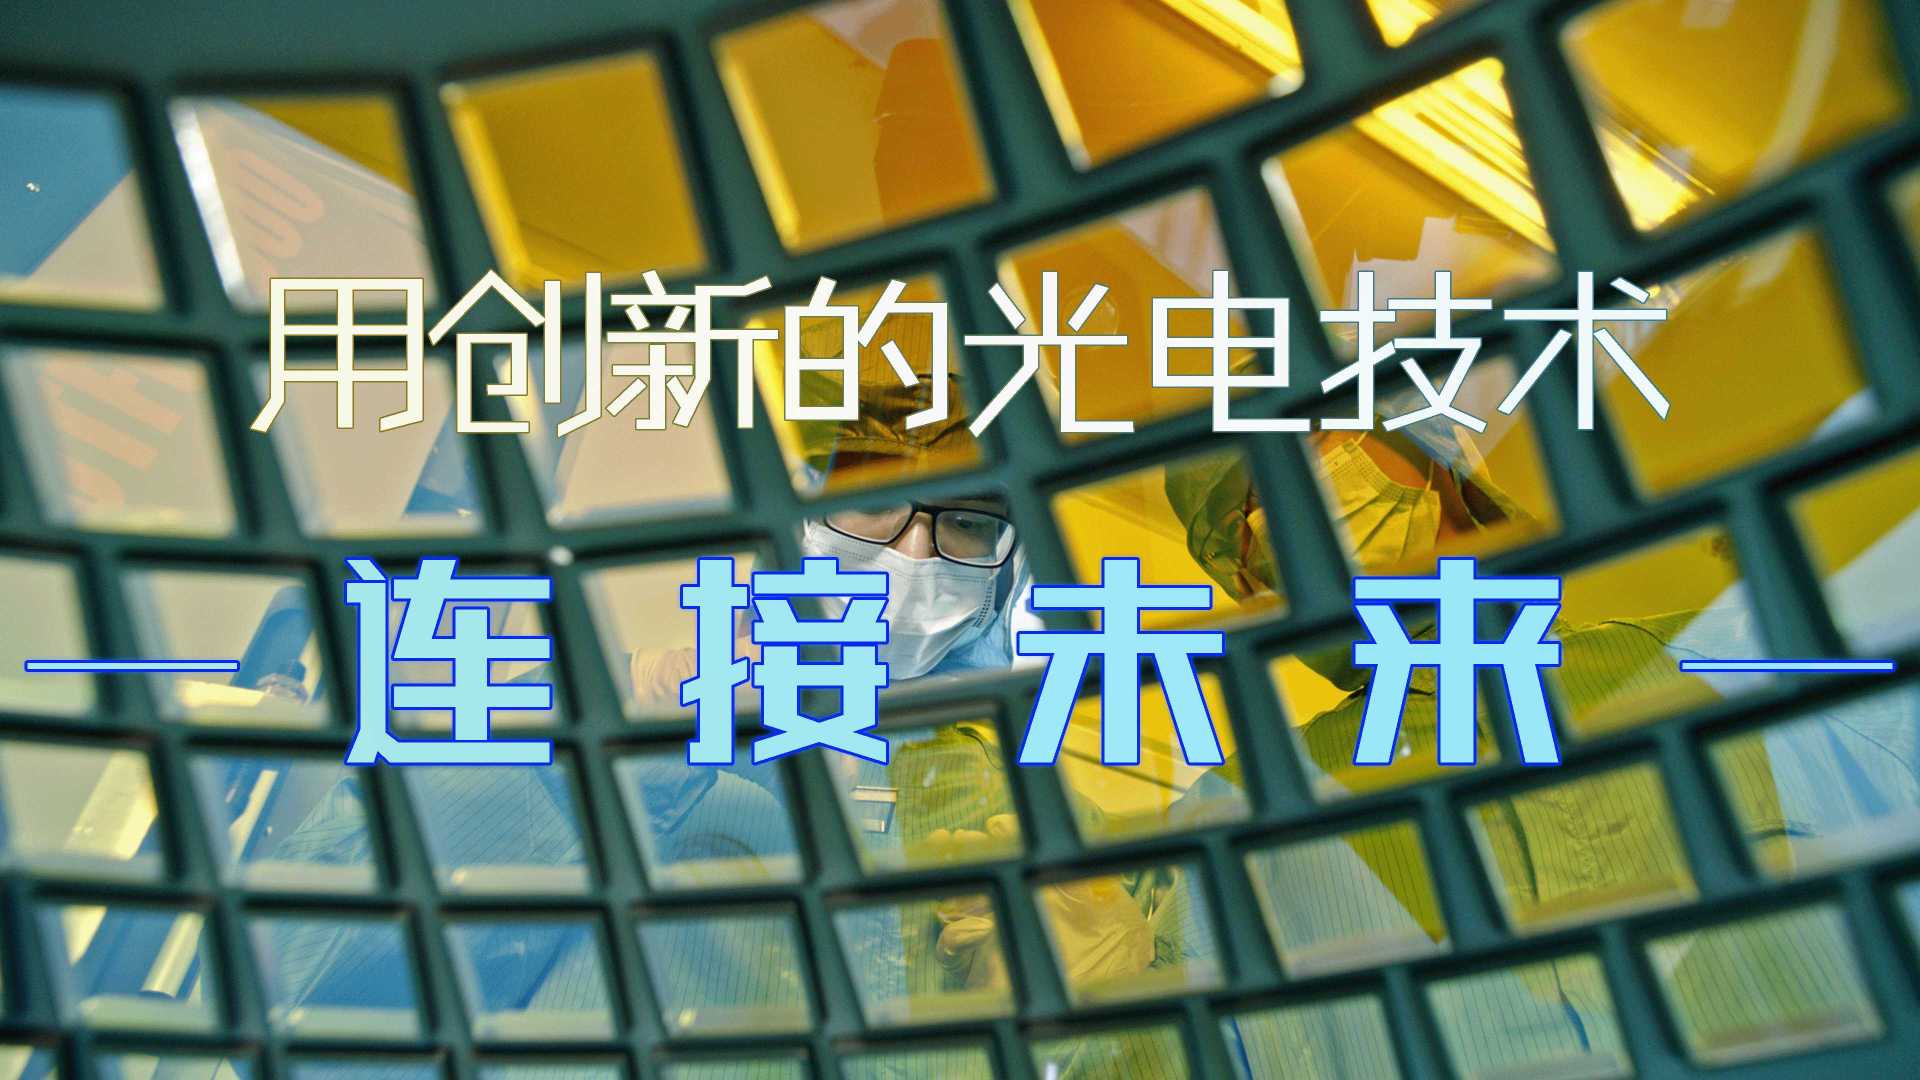 腾景科技×光年映画丨精密光学丨量子计算丨光学企业IPO宣传片